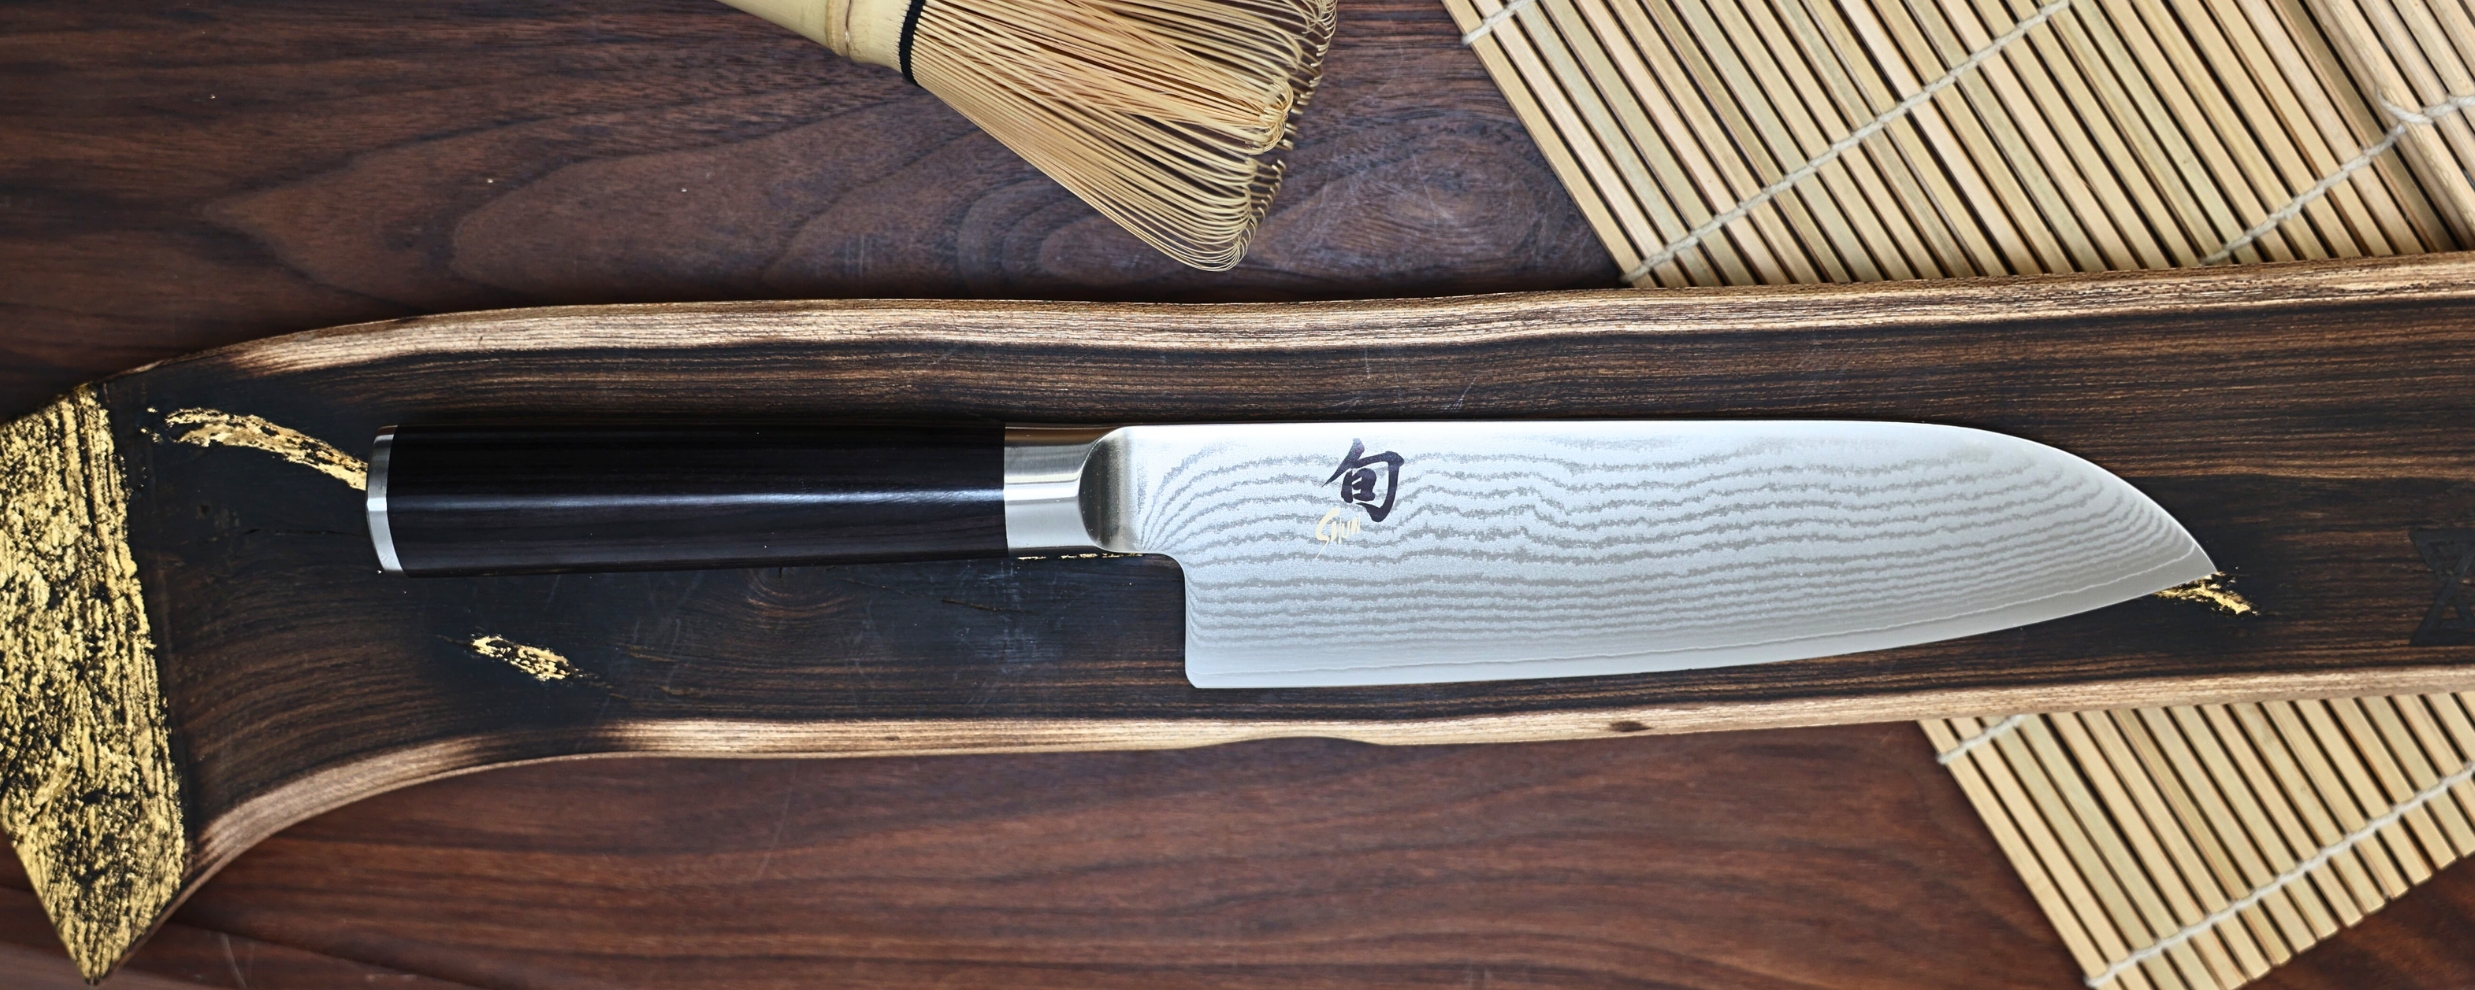 Couteaux de Boucher - Spécialiste en matériel de cuisine professionnel